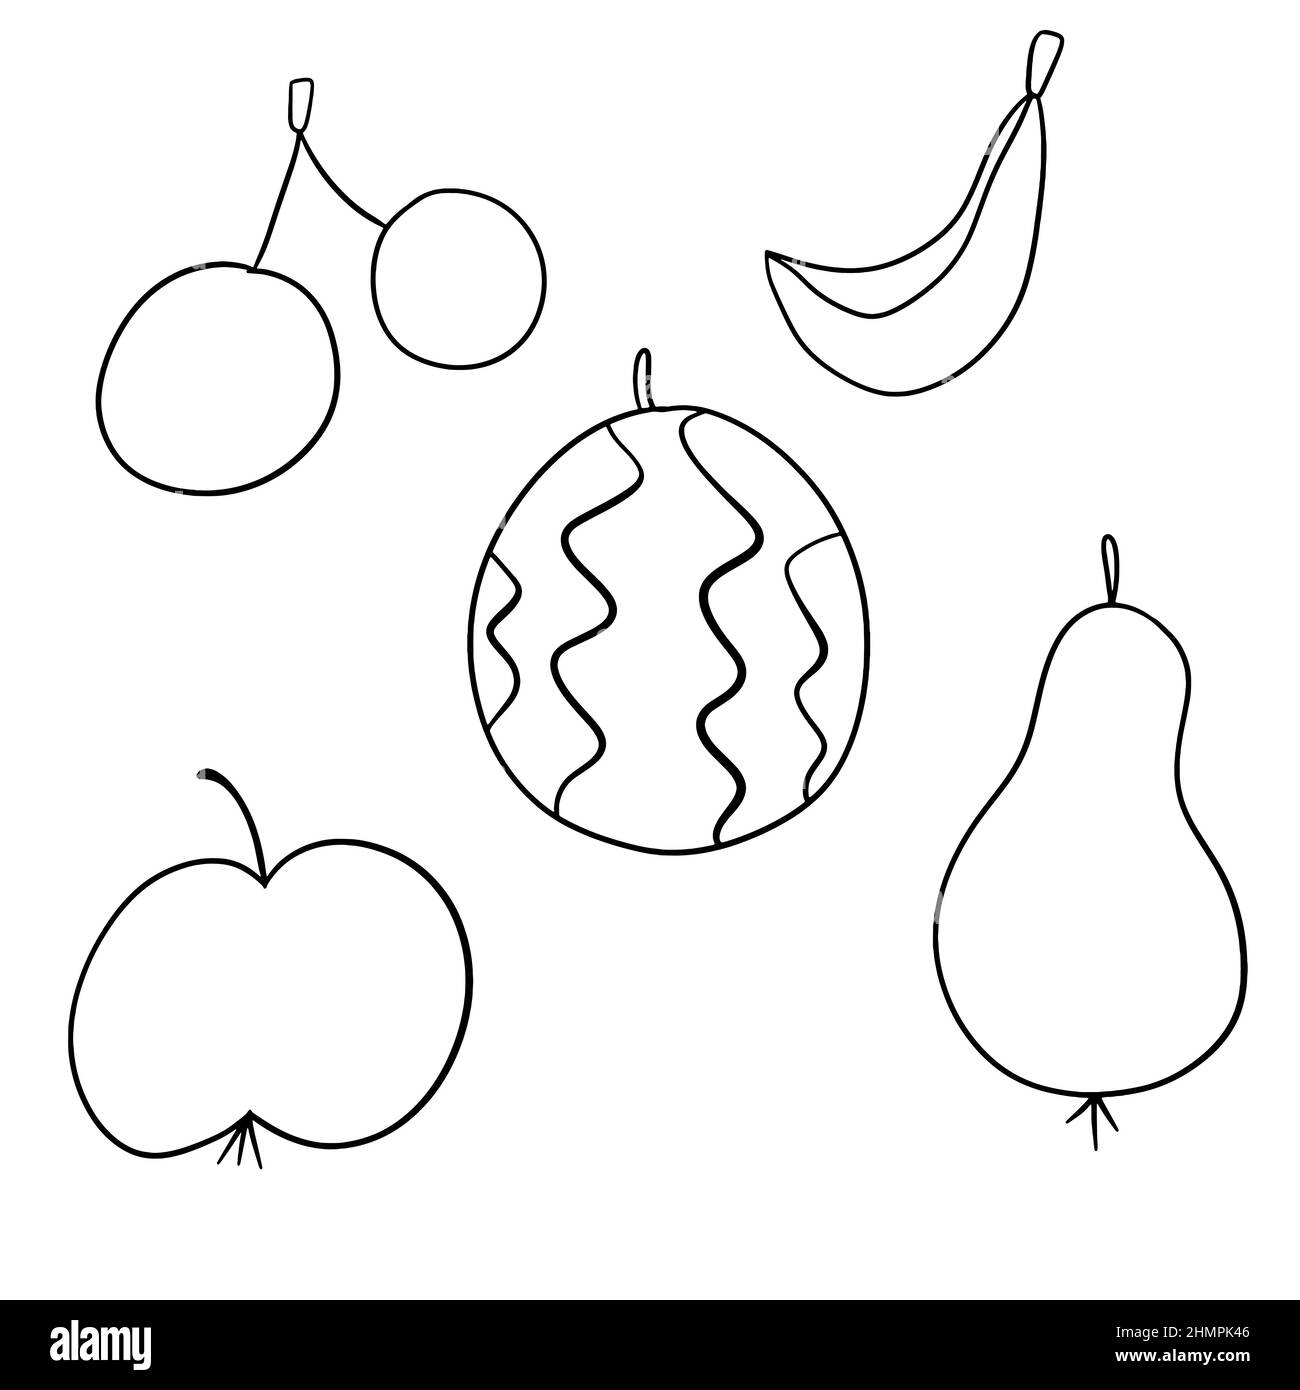 Schwarzer Umriss Doodle Fruit Set mit Apfel, Birne, Wassermelone, Banane, Kirsche. Stock Vektor